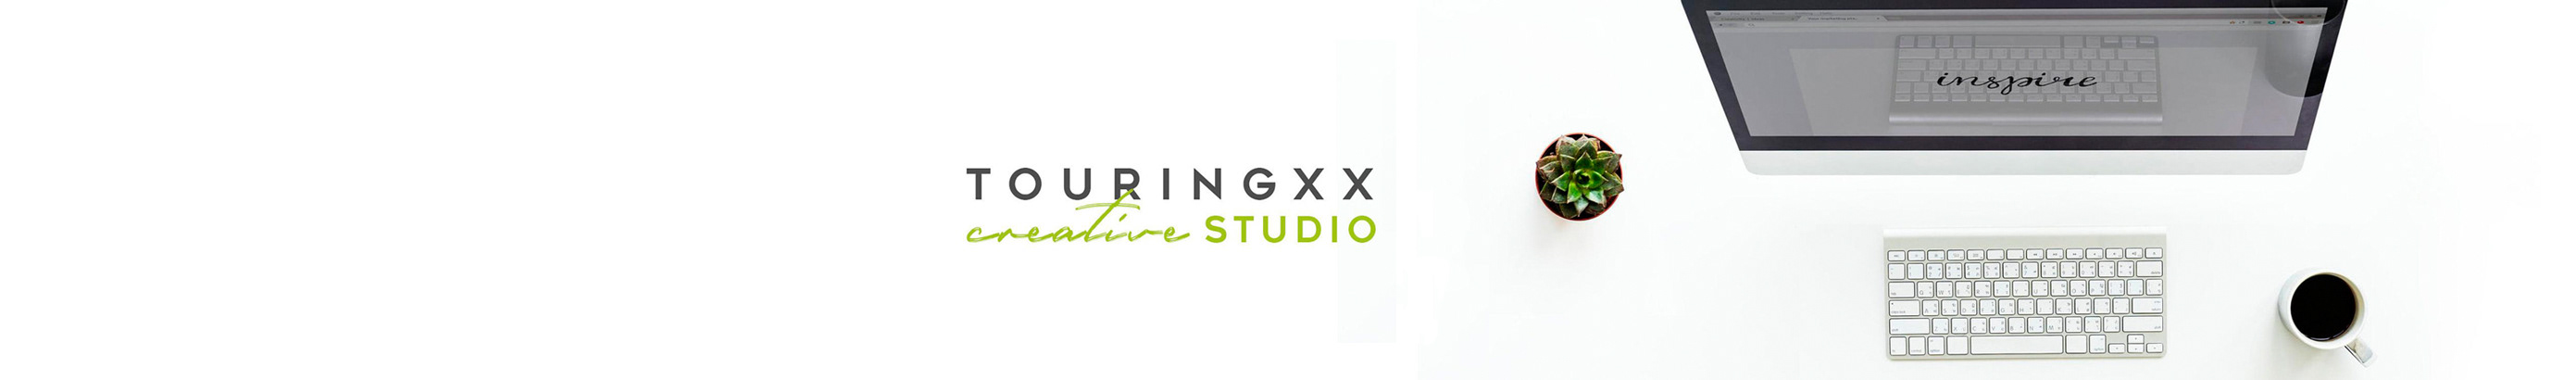 Profil-Banner von Touringxx Creative Studio